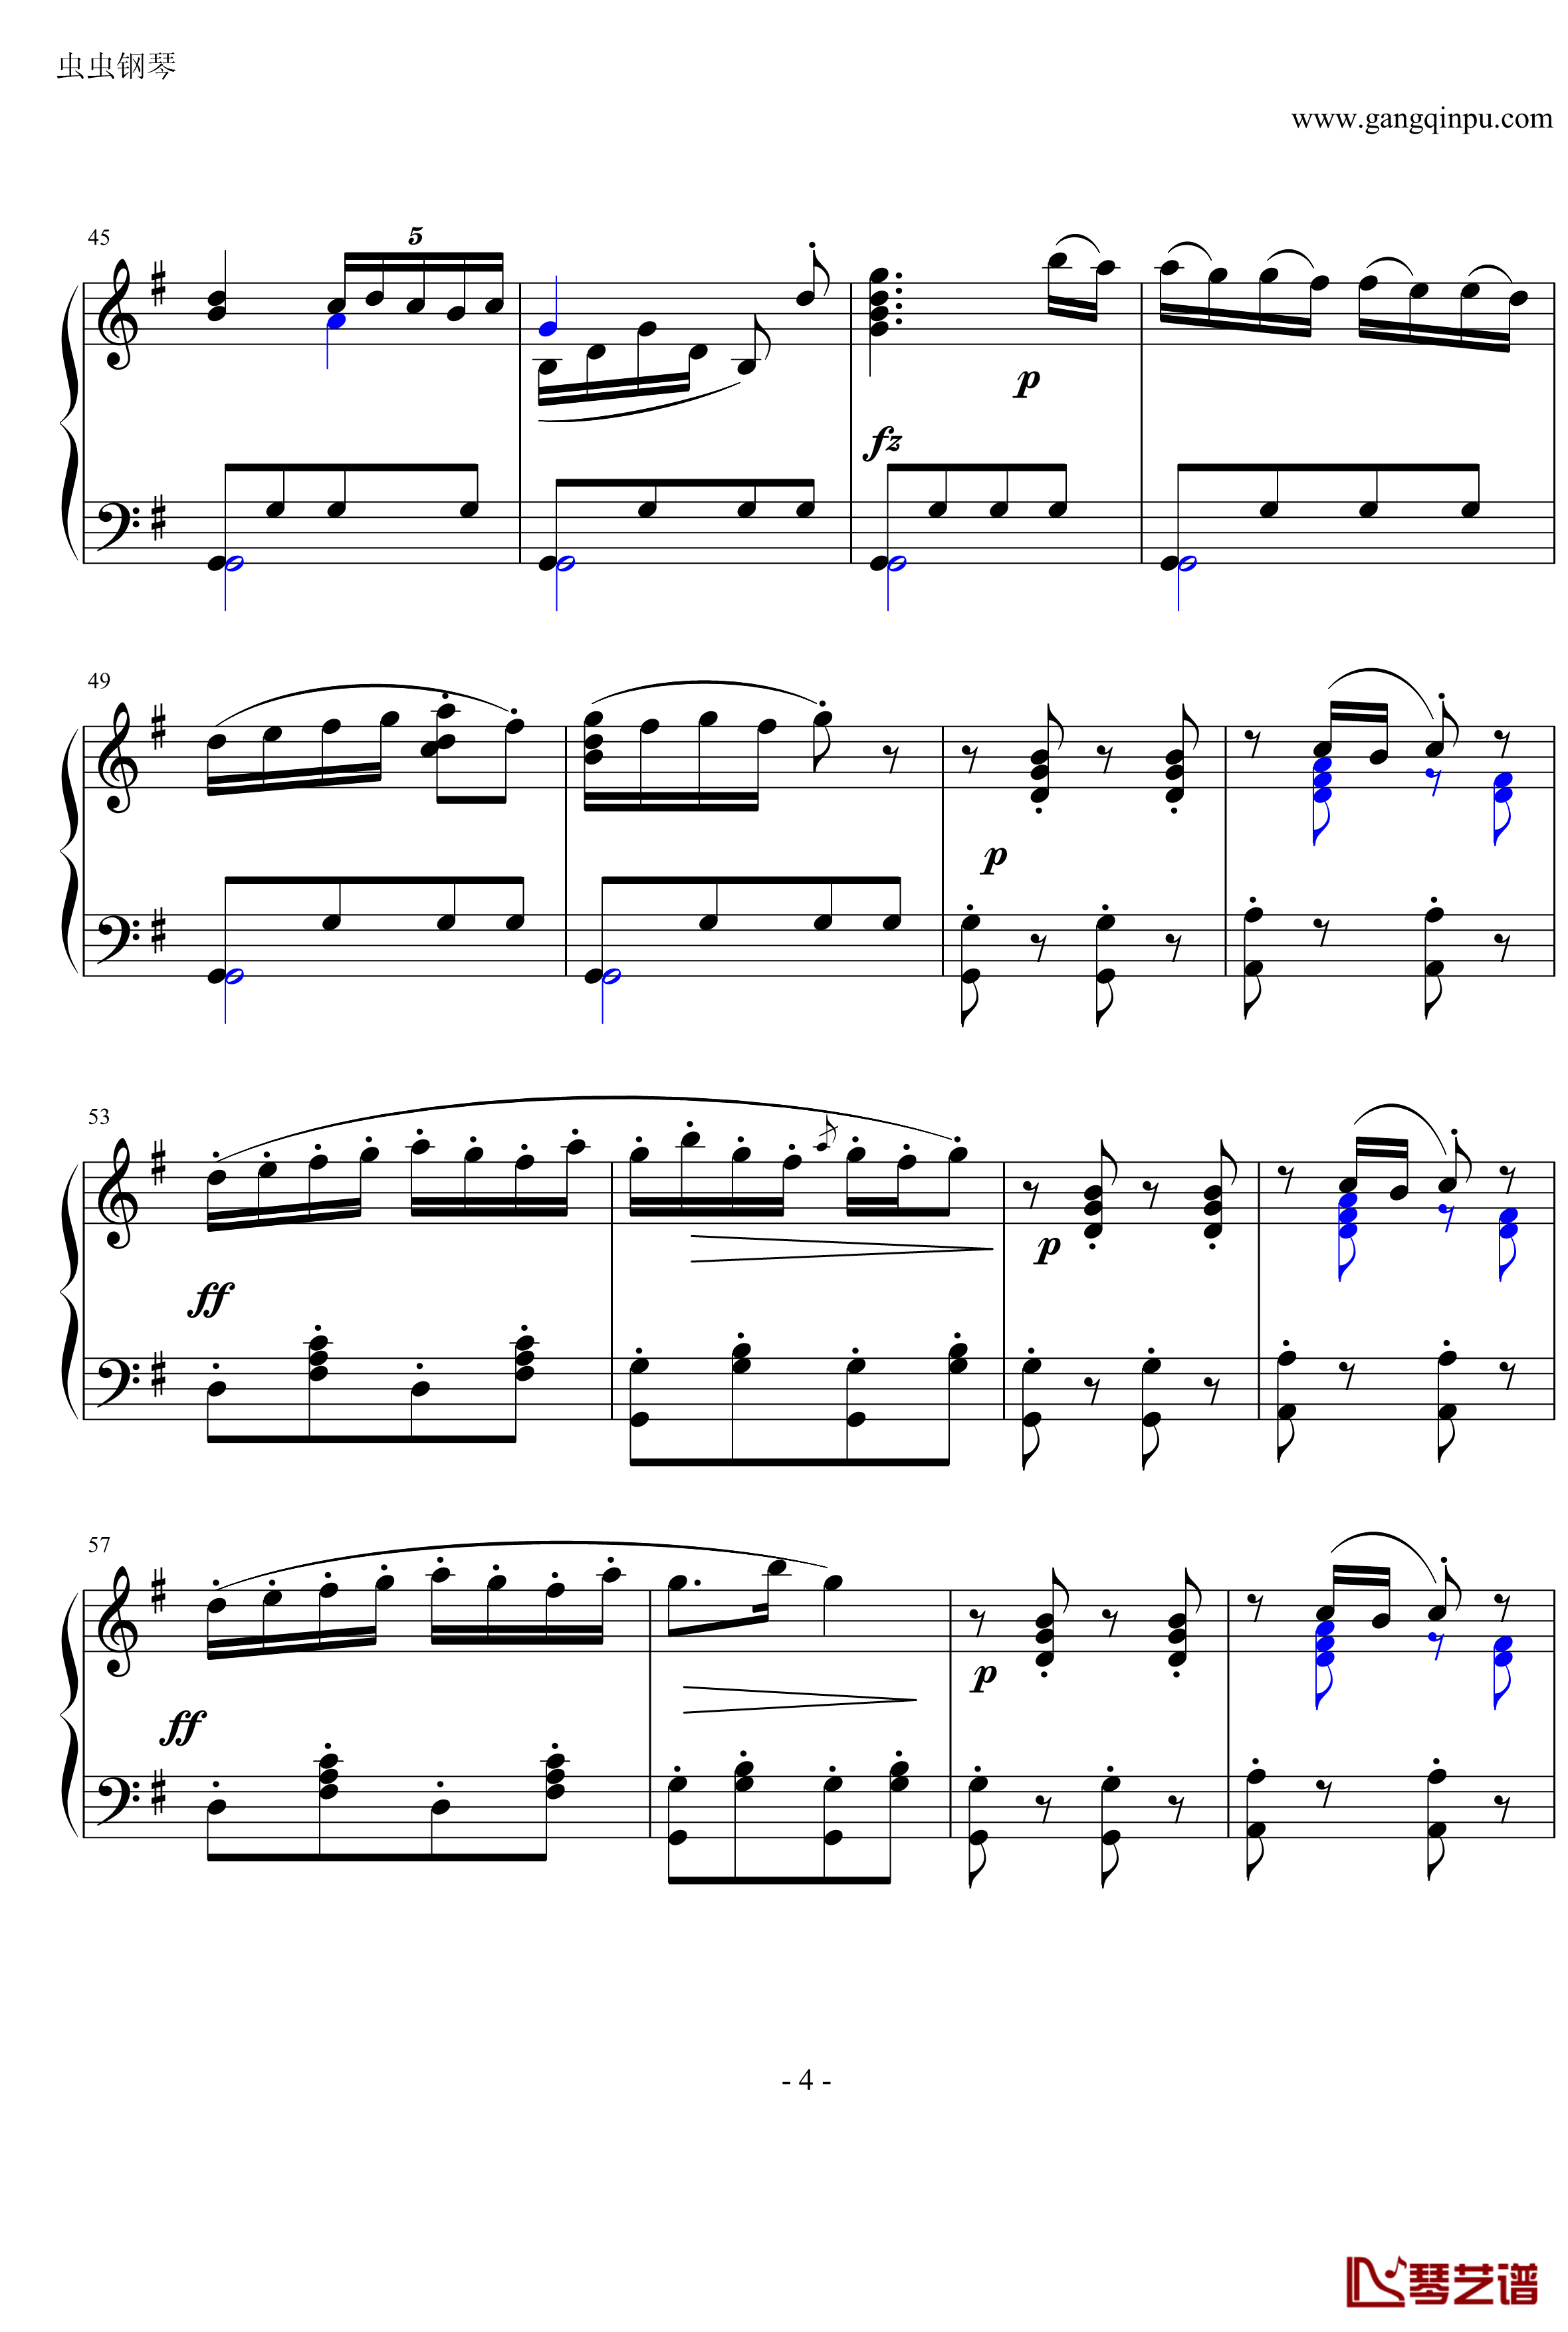 吉普赛回旋曲钢琴谱-海顿4